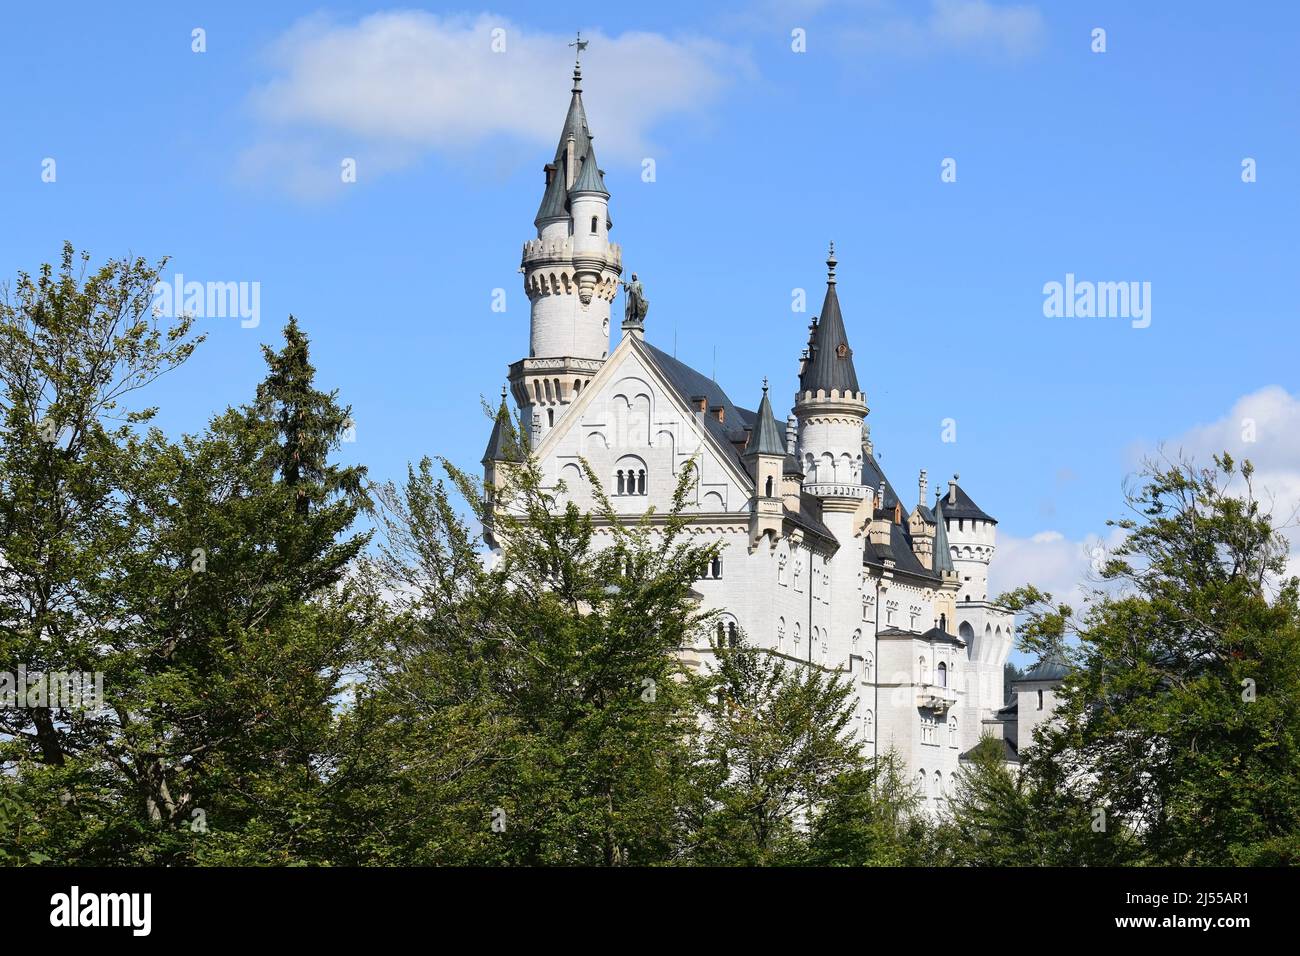 Célèbre château situé au sud de la Bavière (appelé château de Neuschwanstein). Palais du roi Ludwig II Également connu sous le nom de 'Château de 'Disney'. Bavière, Allemagne Banque D'Images